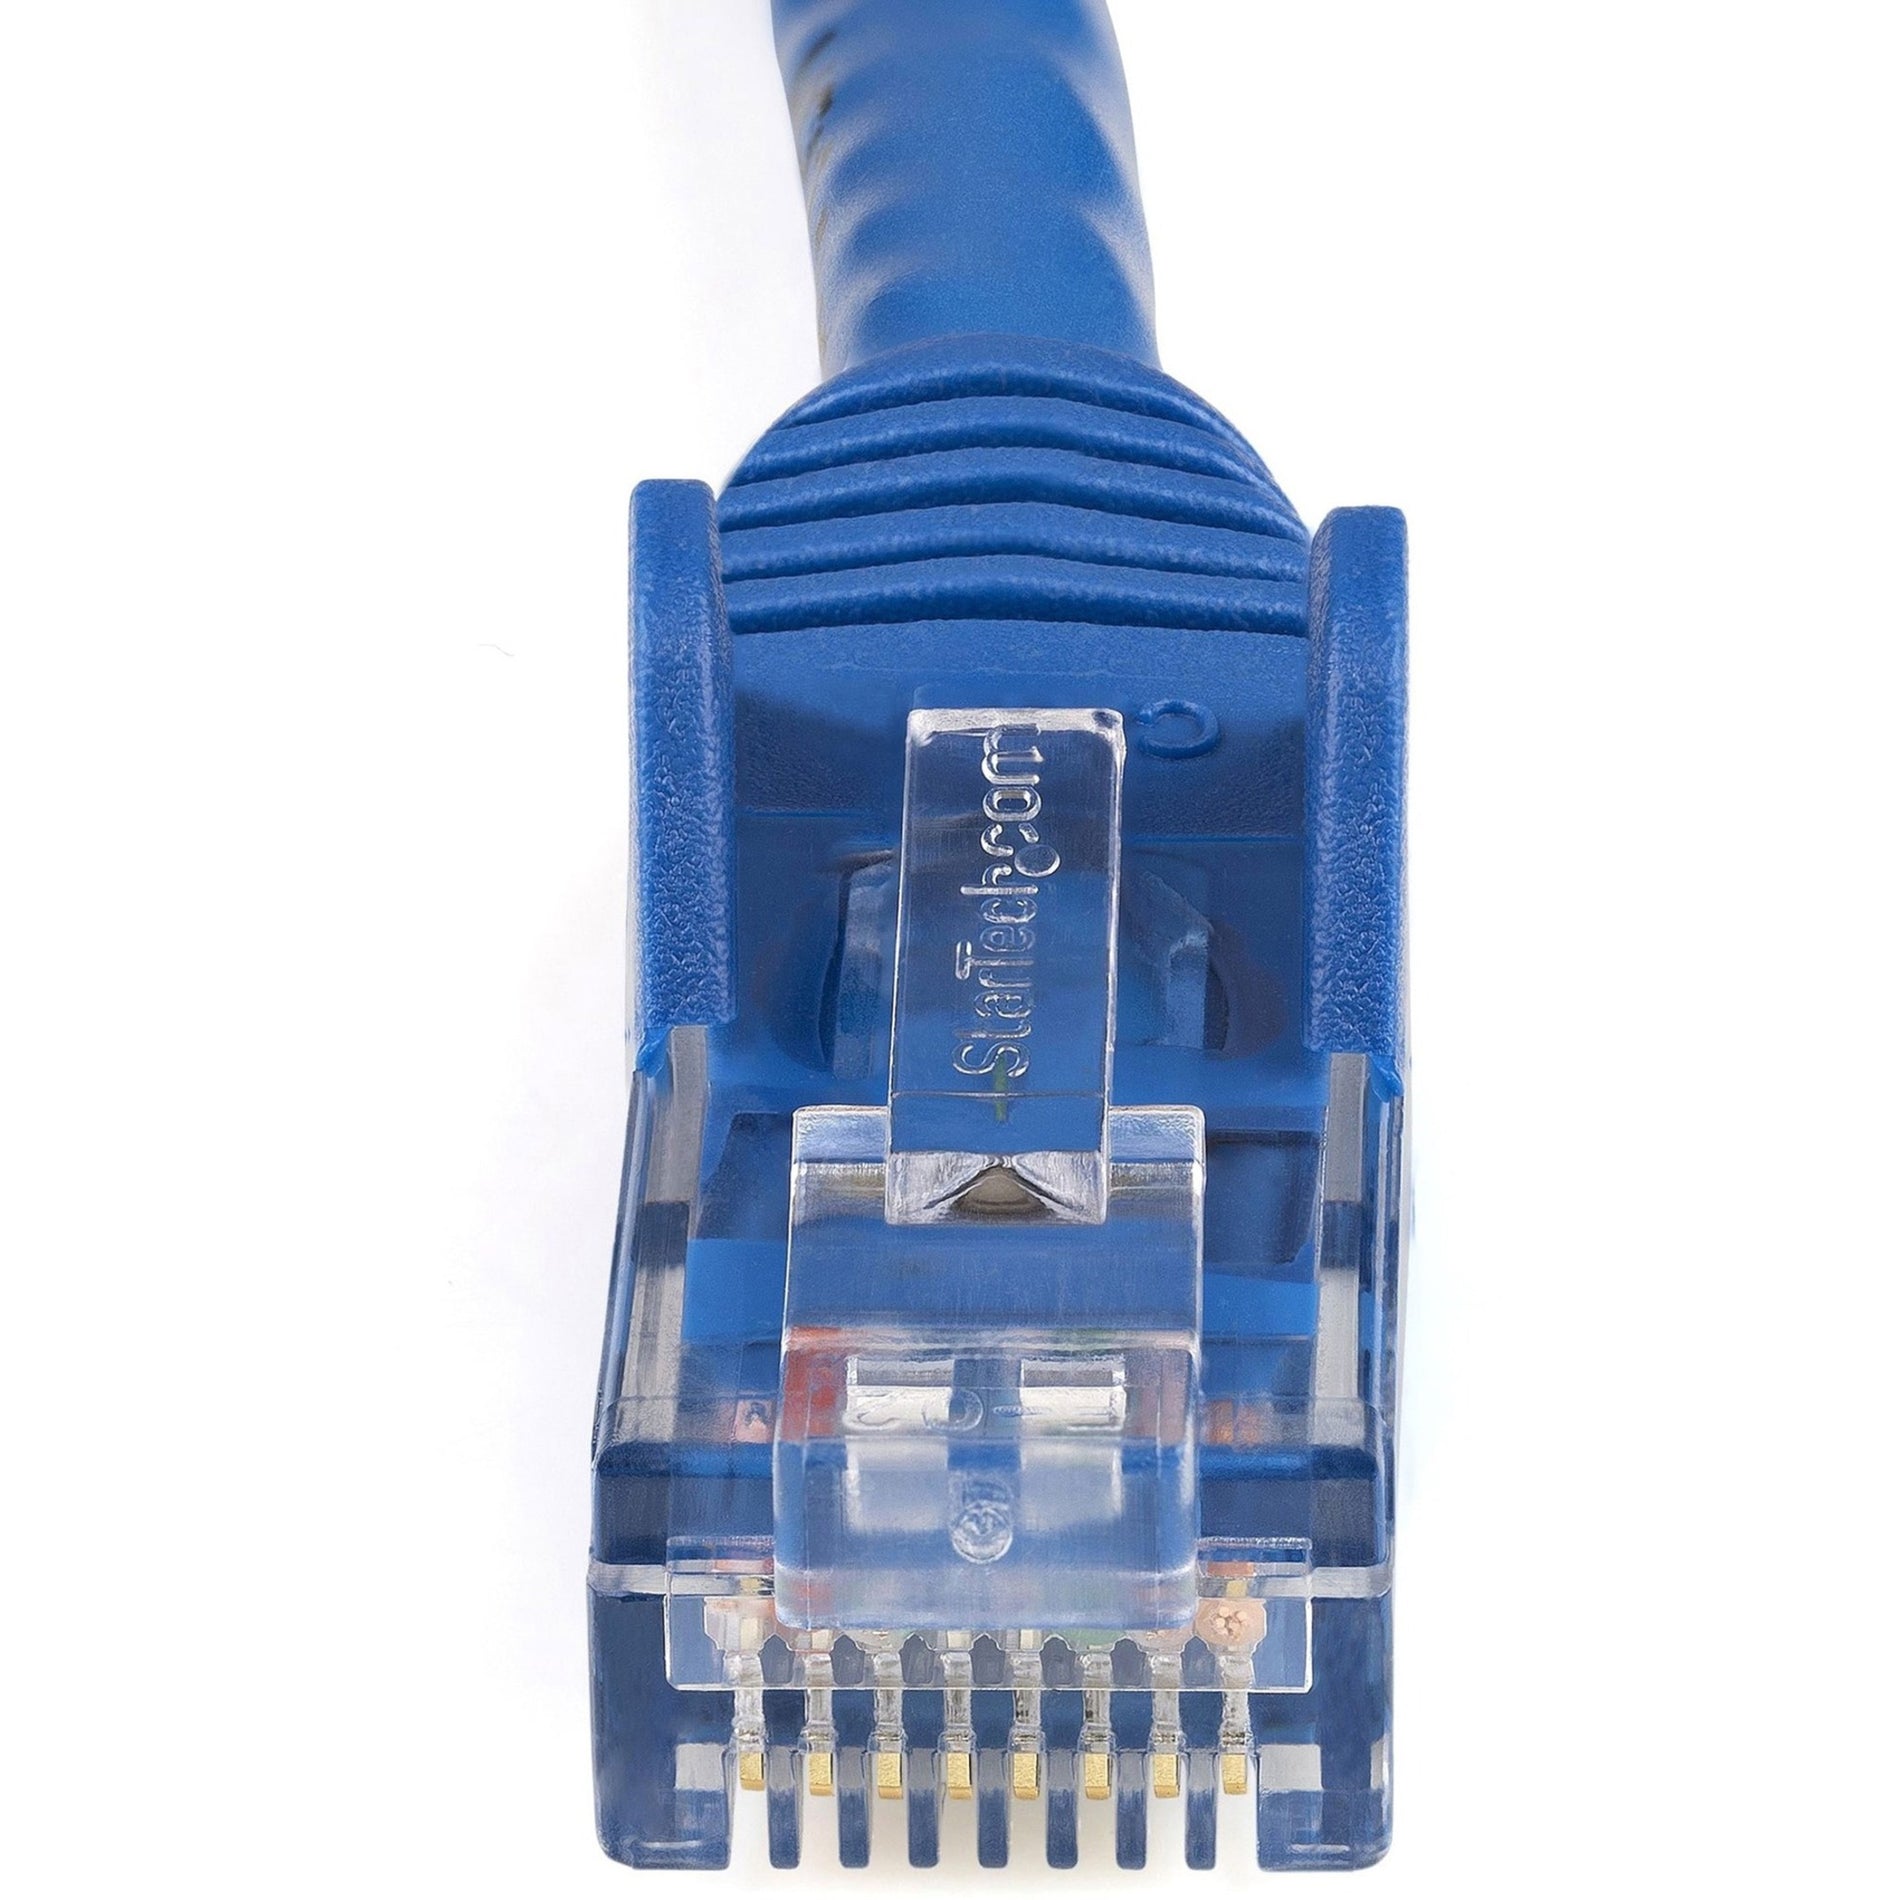 StarTech.com N6PATCH125BL Cat6 Patch Cable, 125ft Blue Ethernet Cable, Snagless RJ45 Connectors